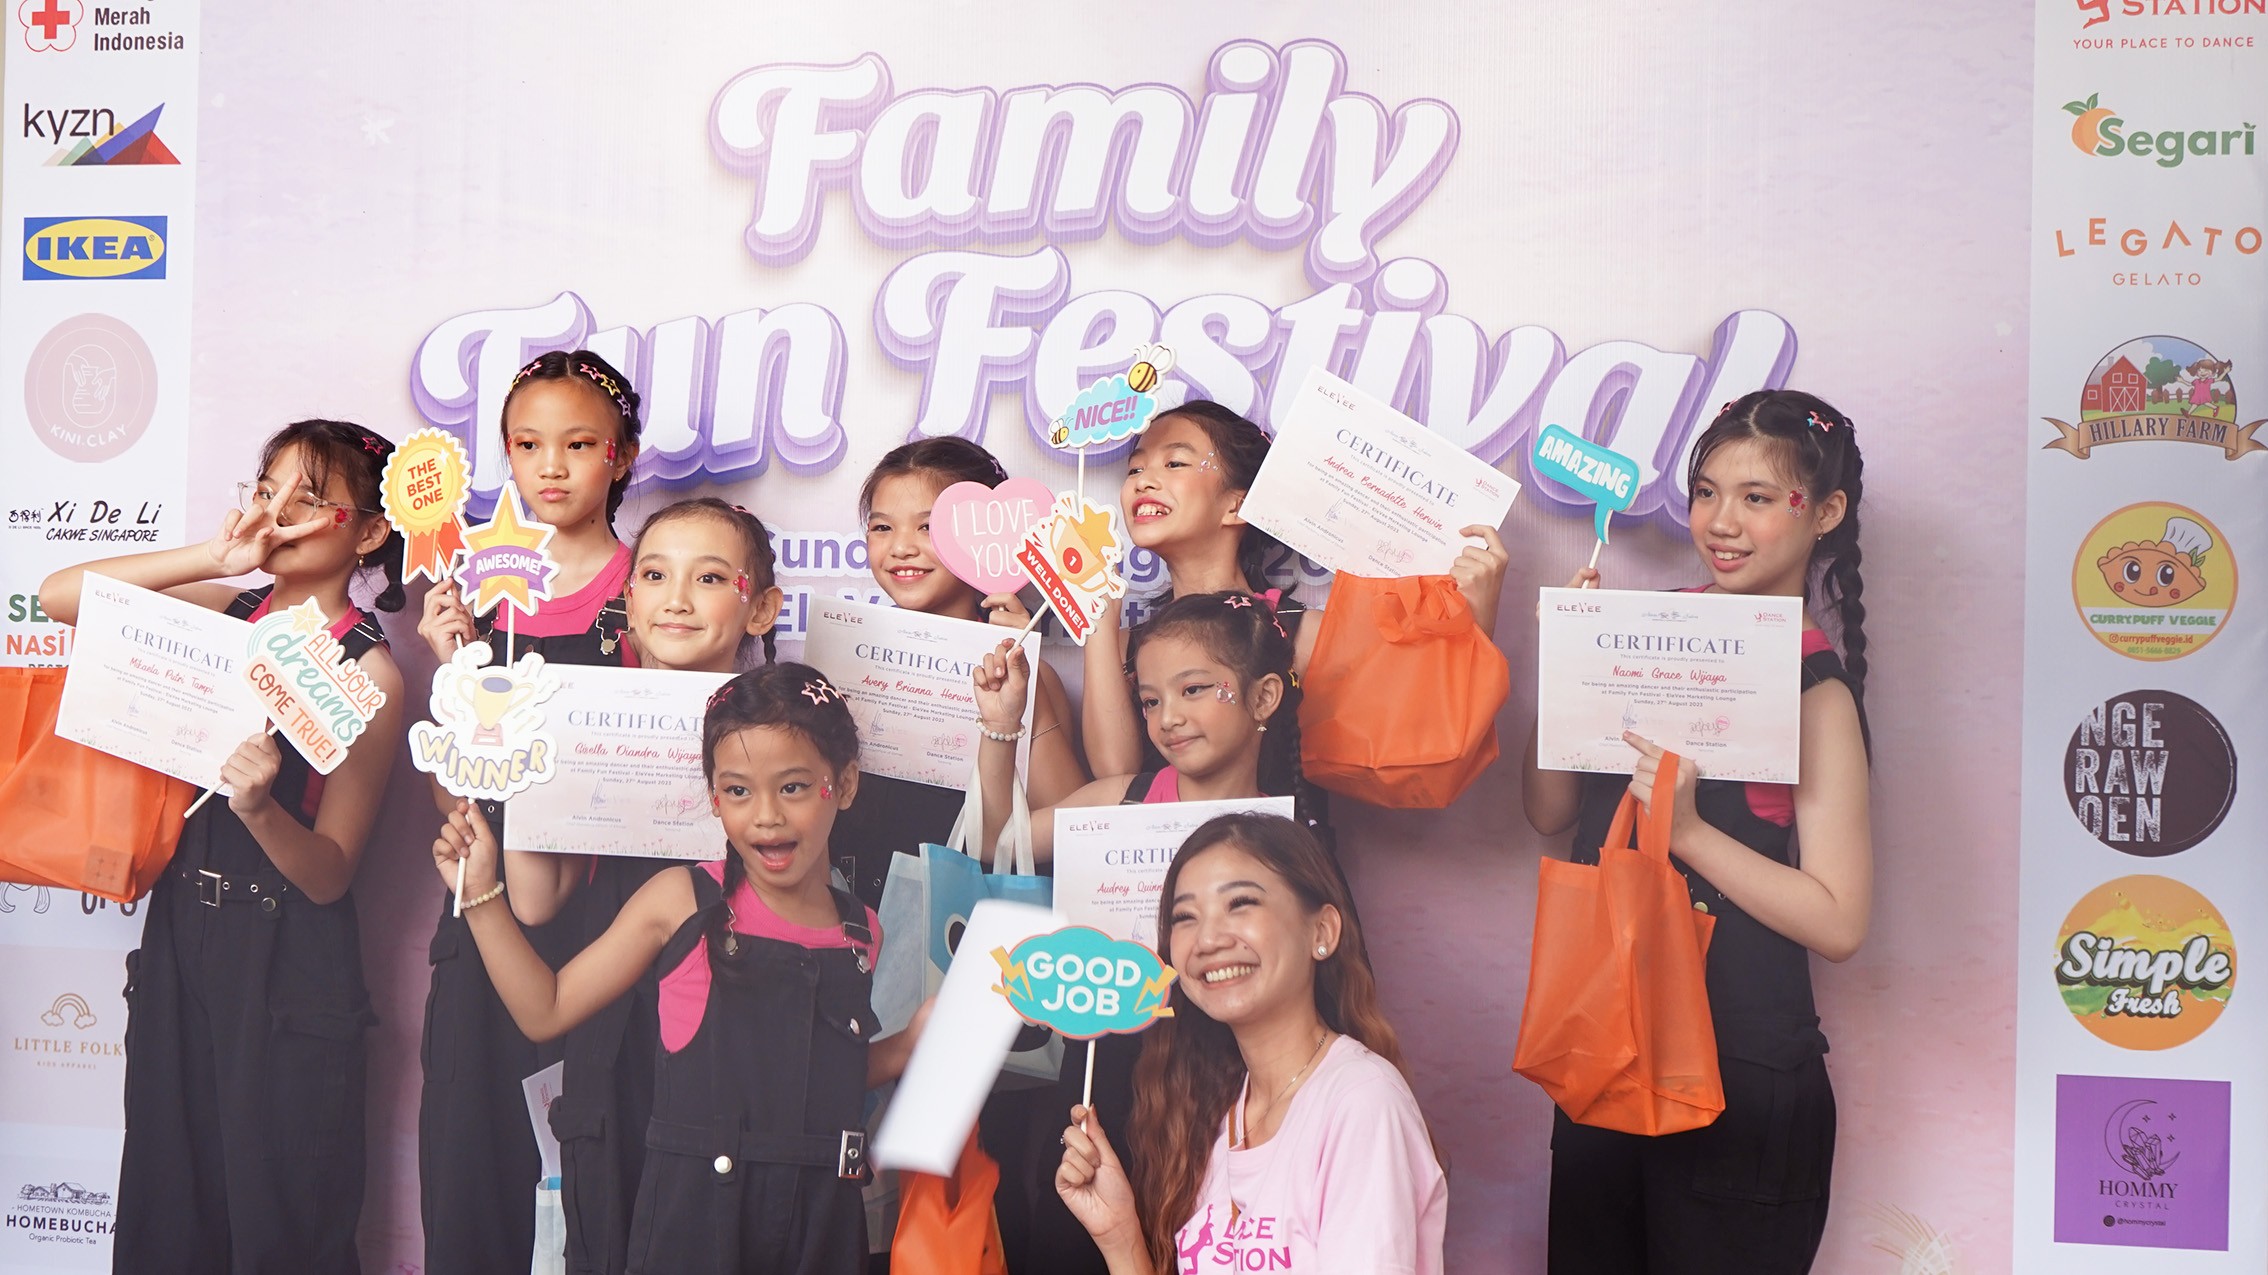 Family Fun Festival